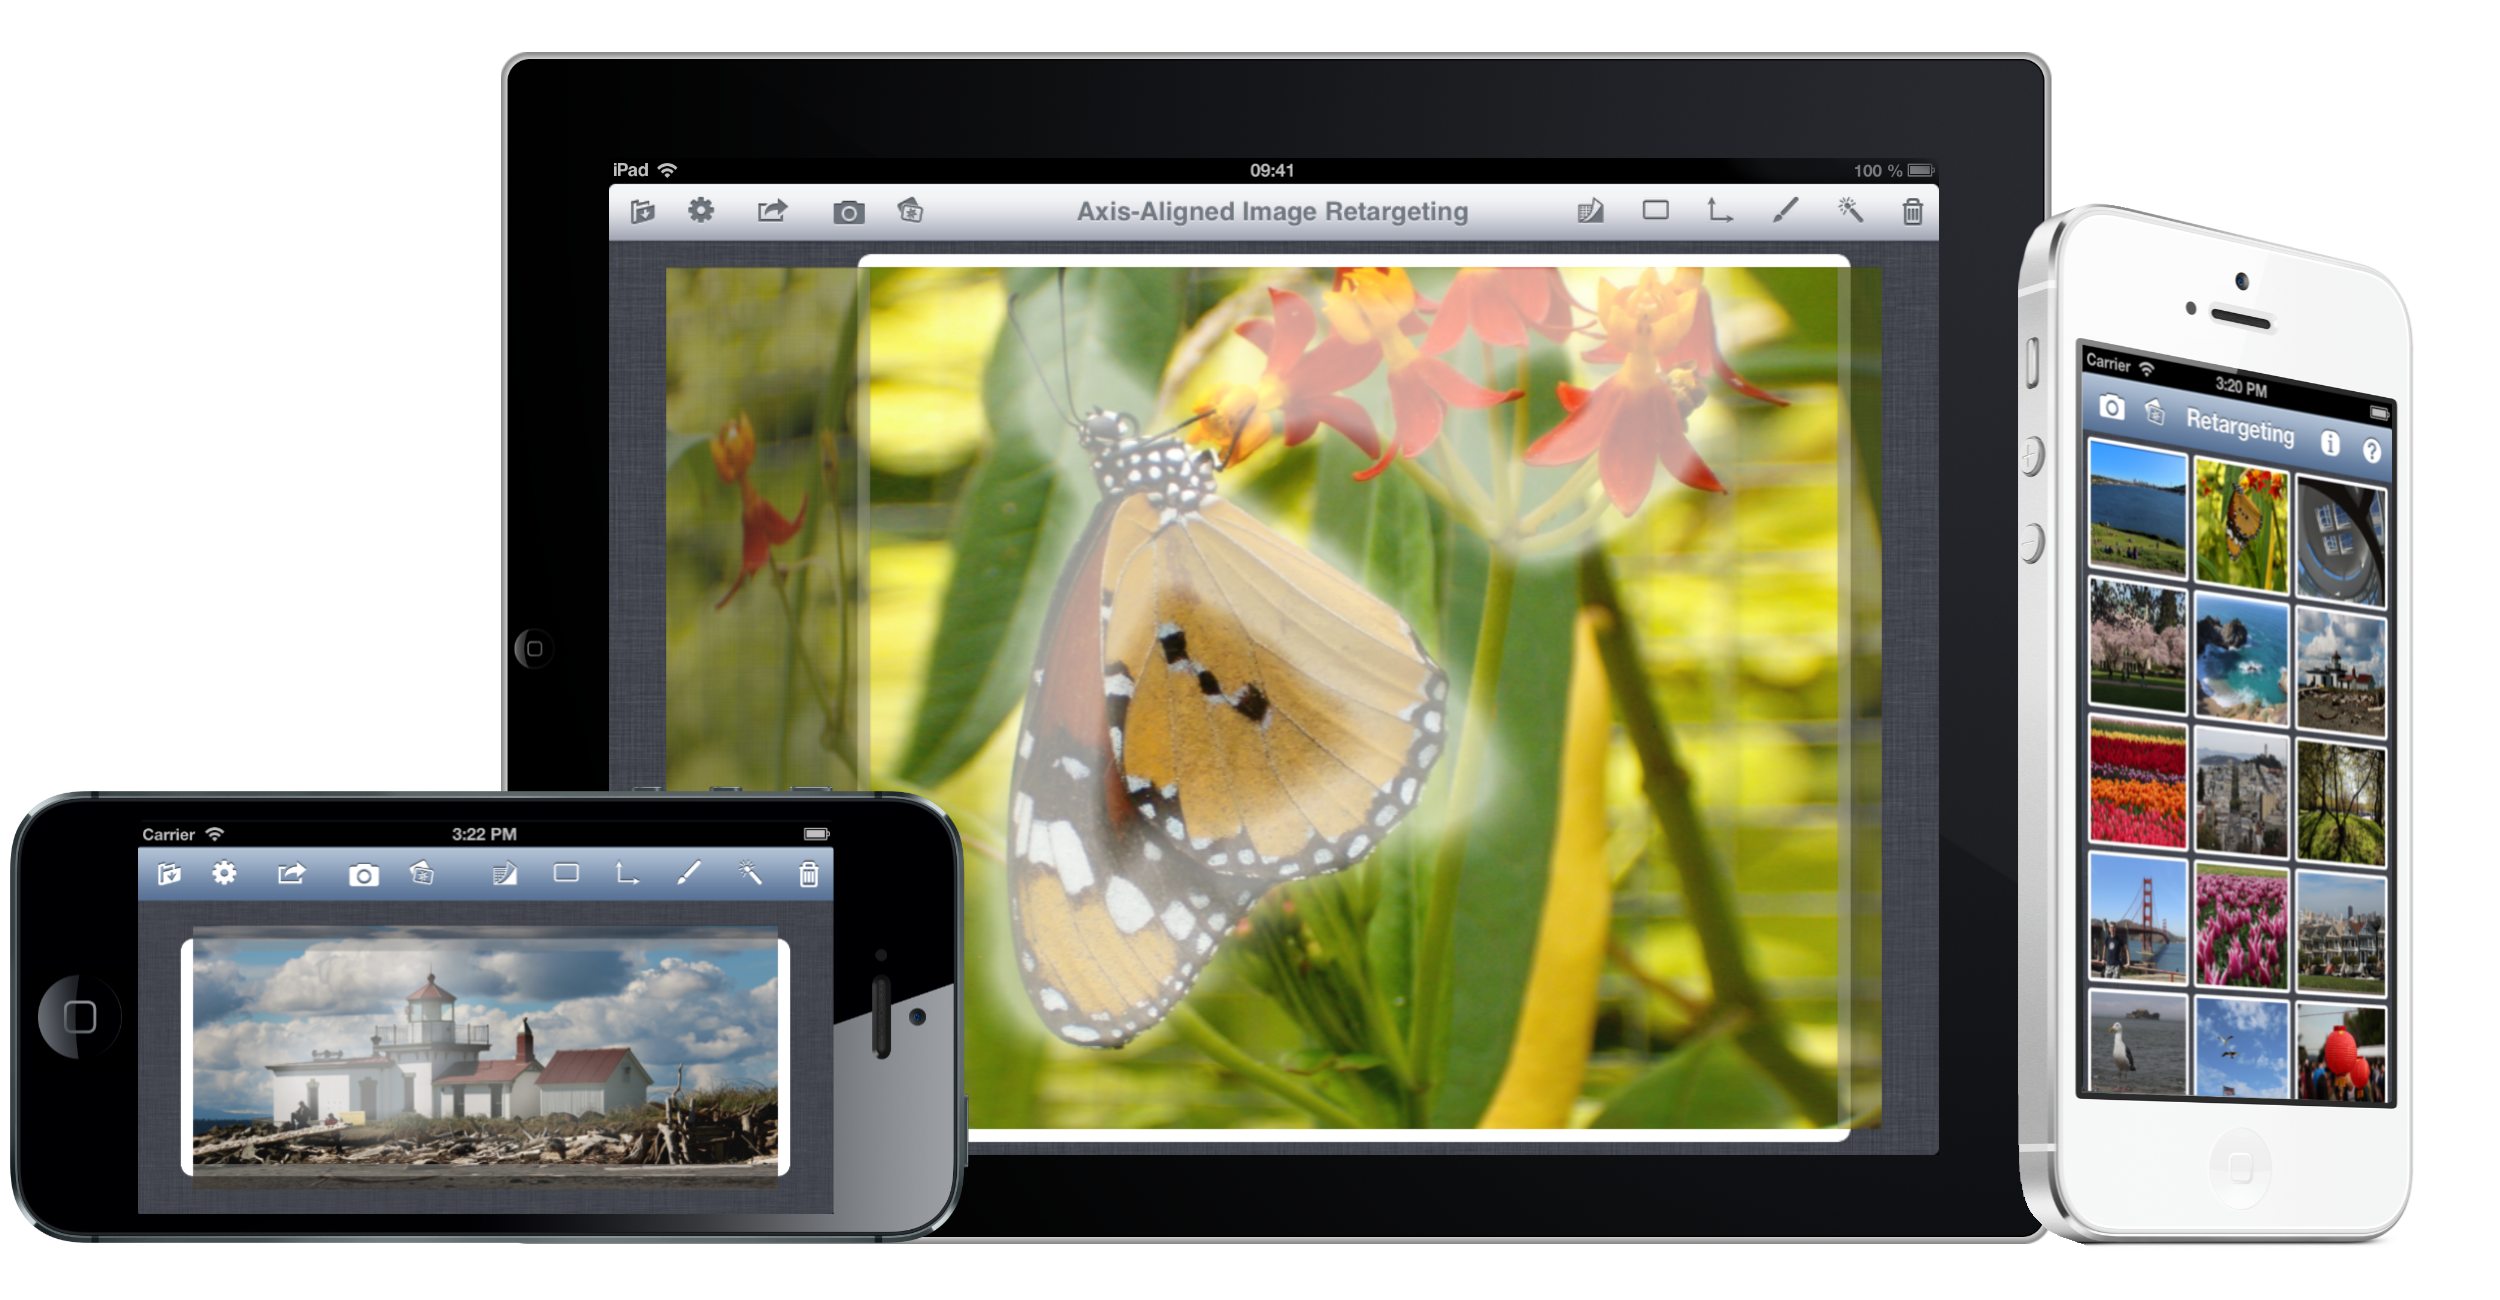 Refooormat - Image Retargeting for iOS